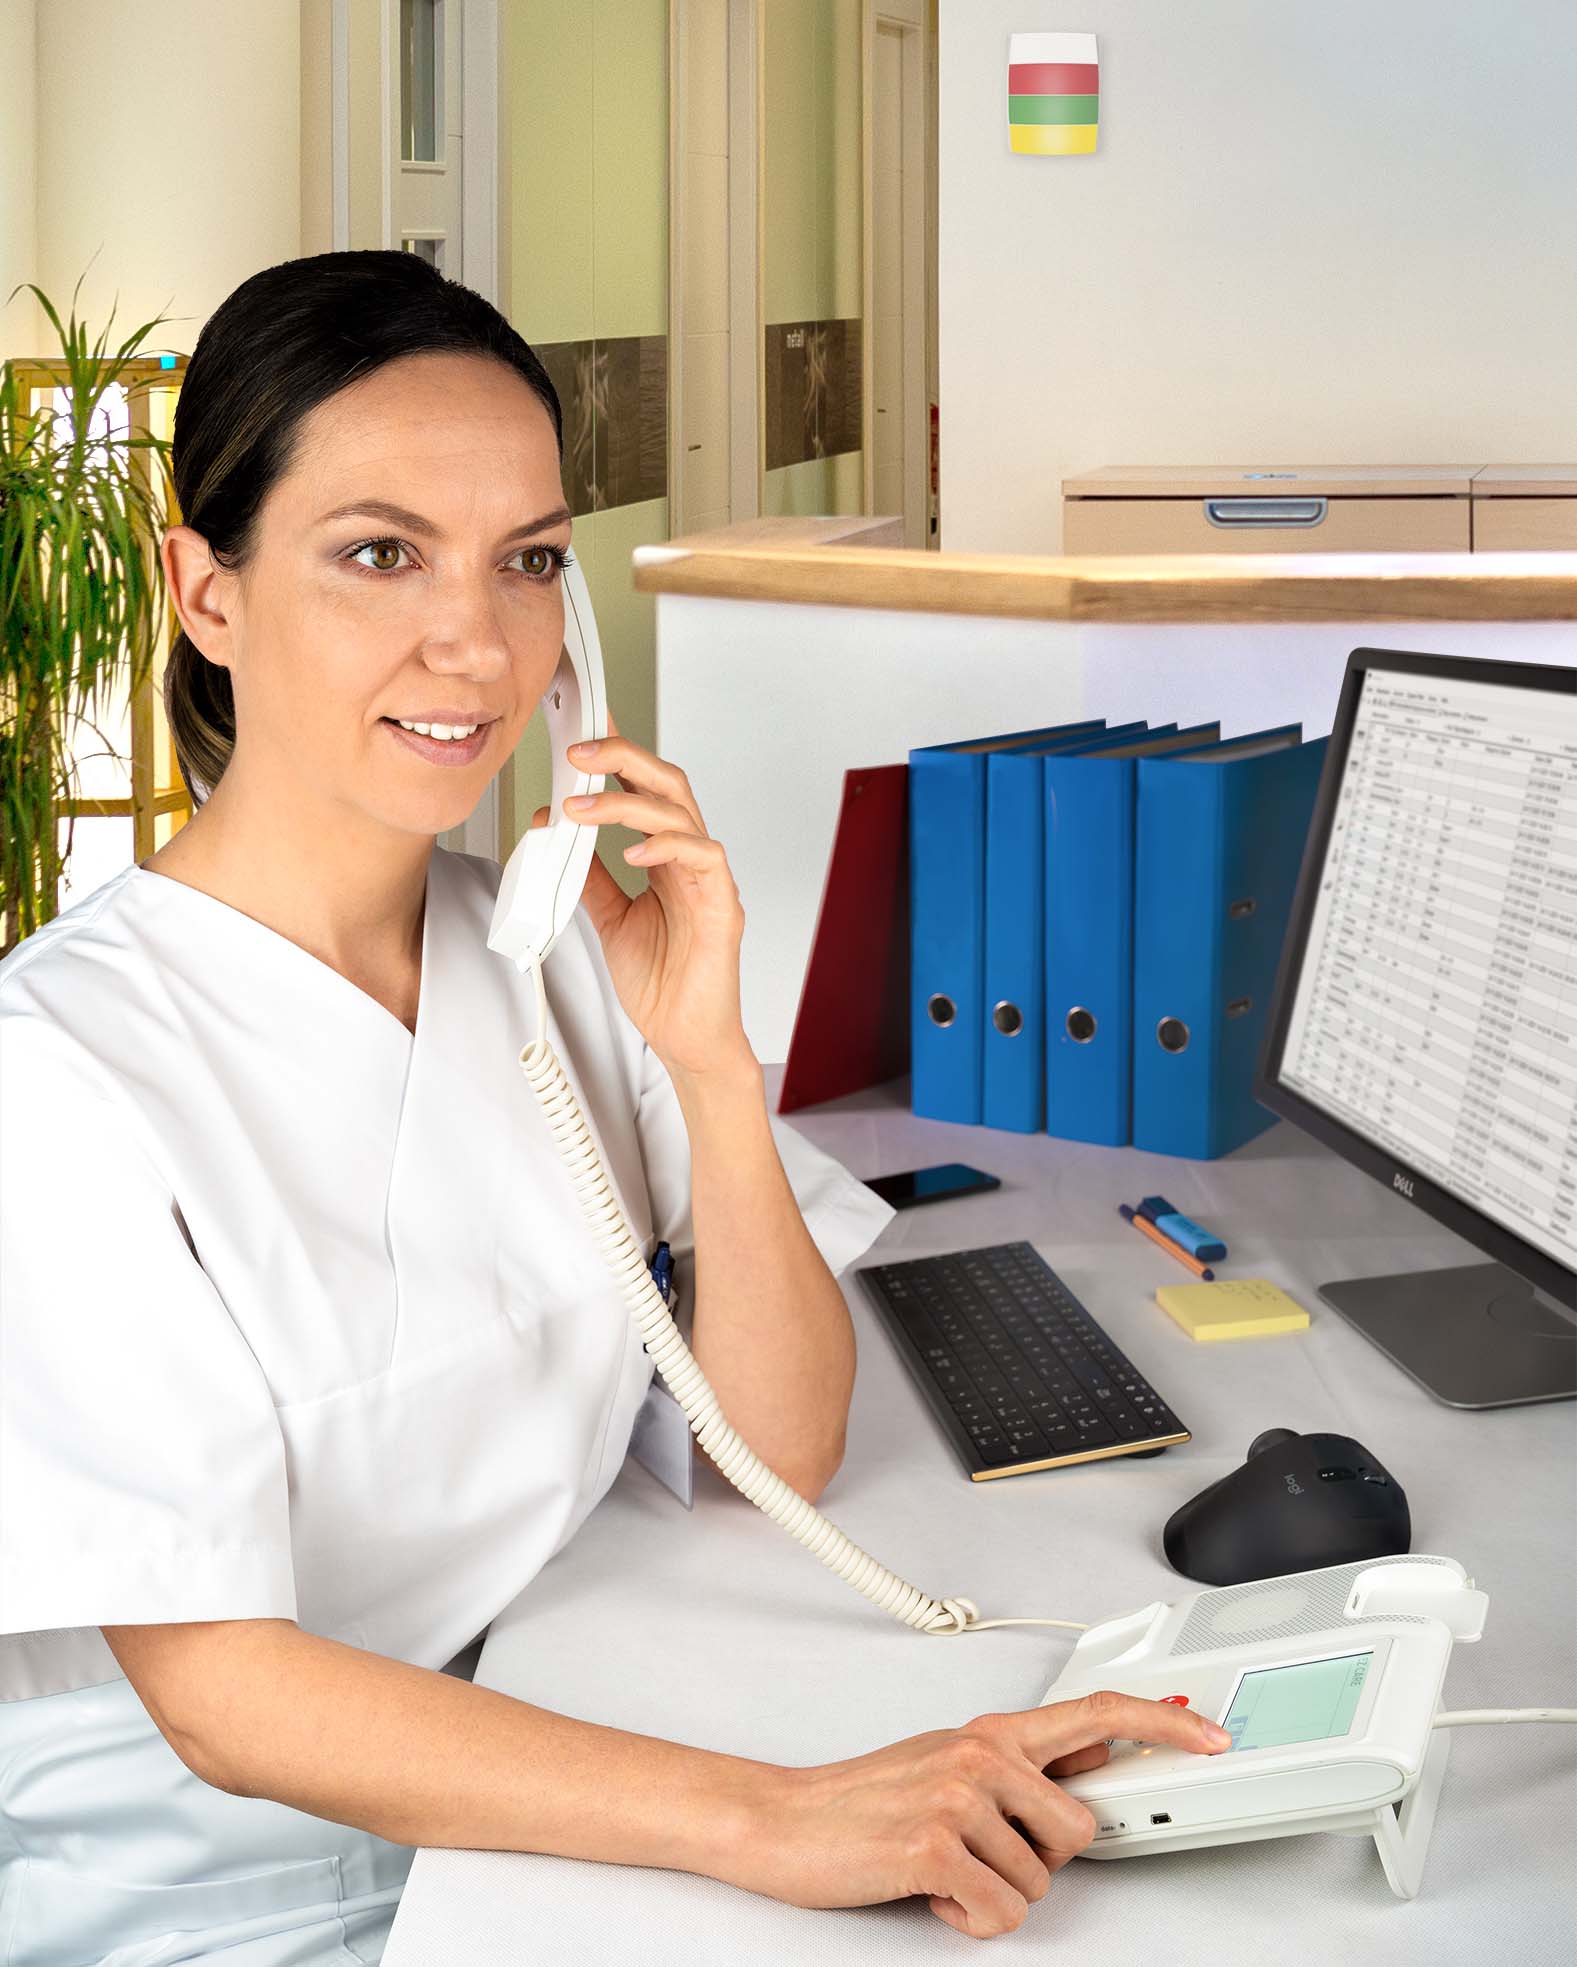 Los sistemas de llamada con voz relevan al personal de enfermería